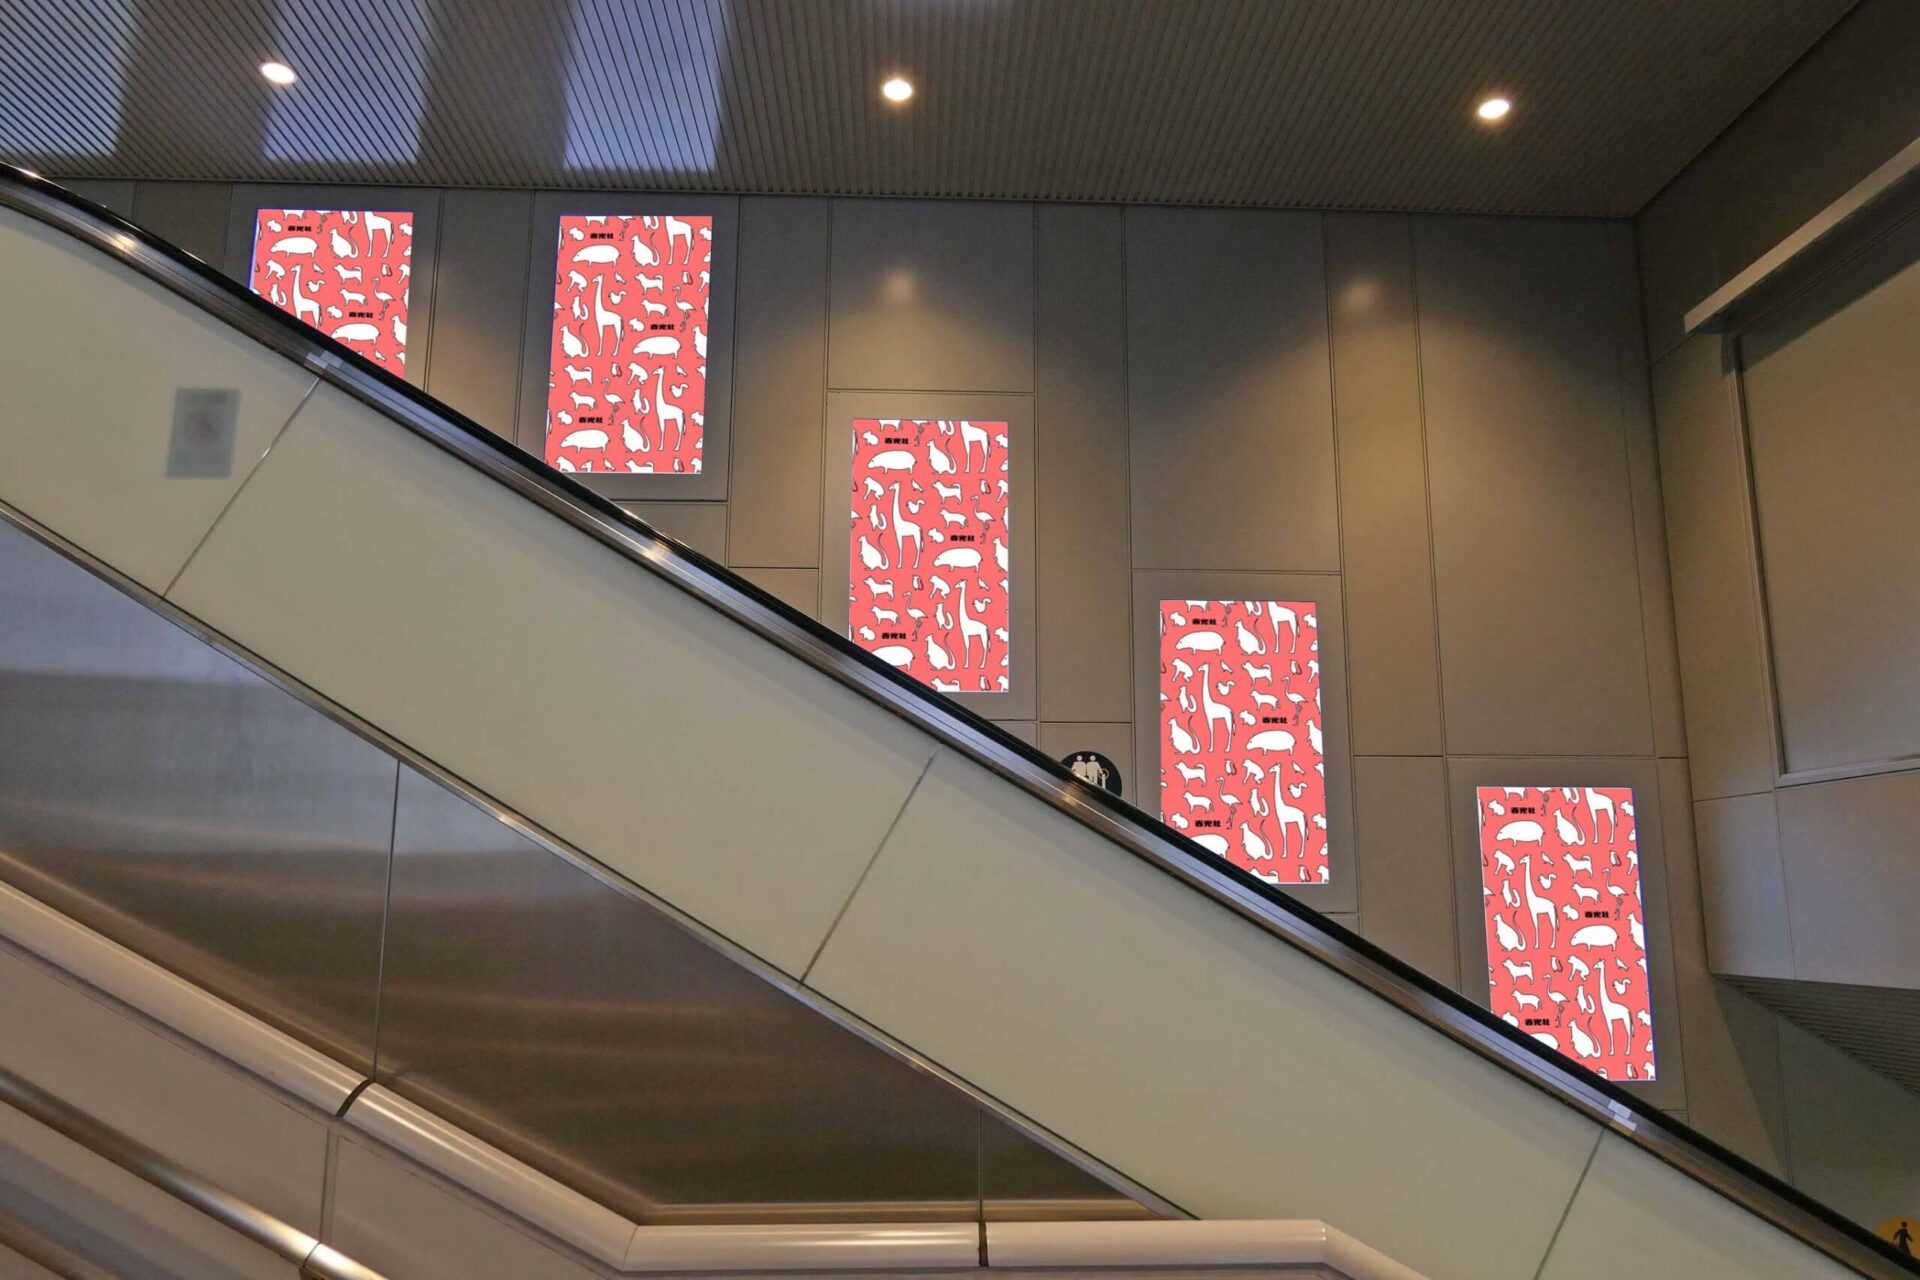 東急田園都市線渋谷駅の階段壁面に設置されているタテ型のデジタルサイネージ媒体